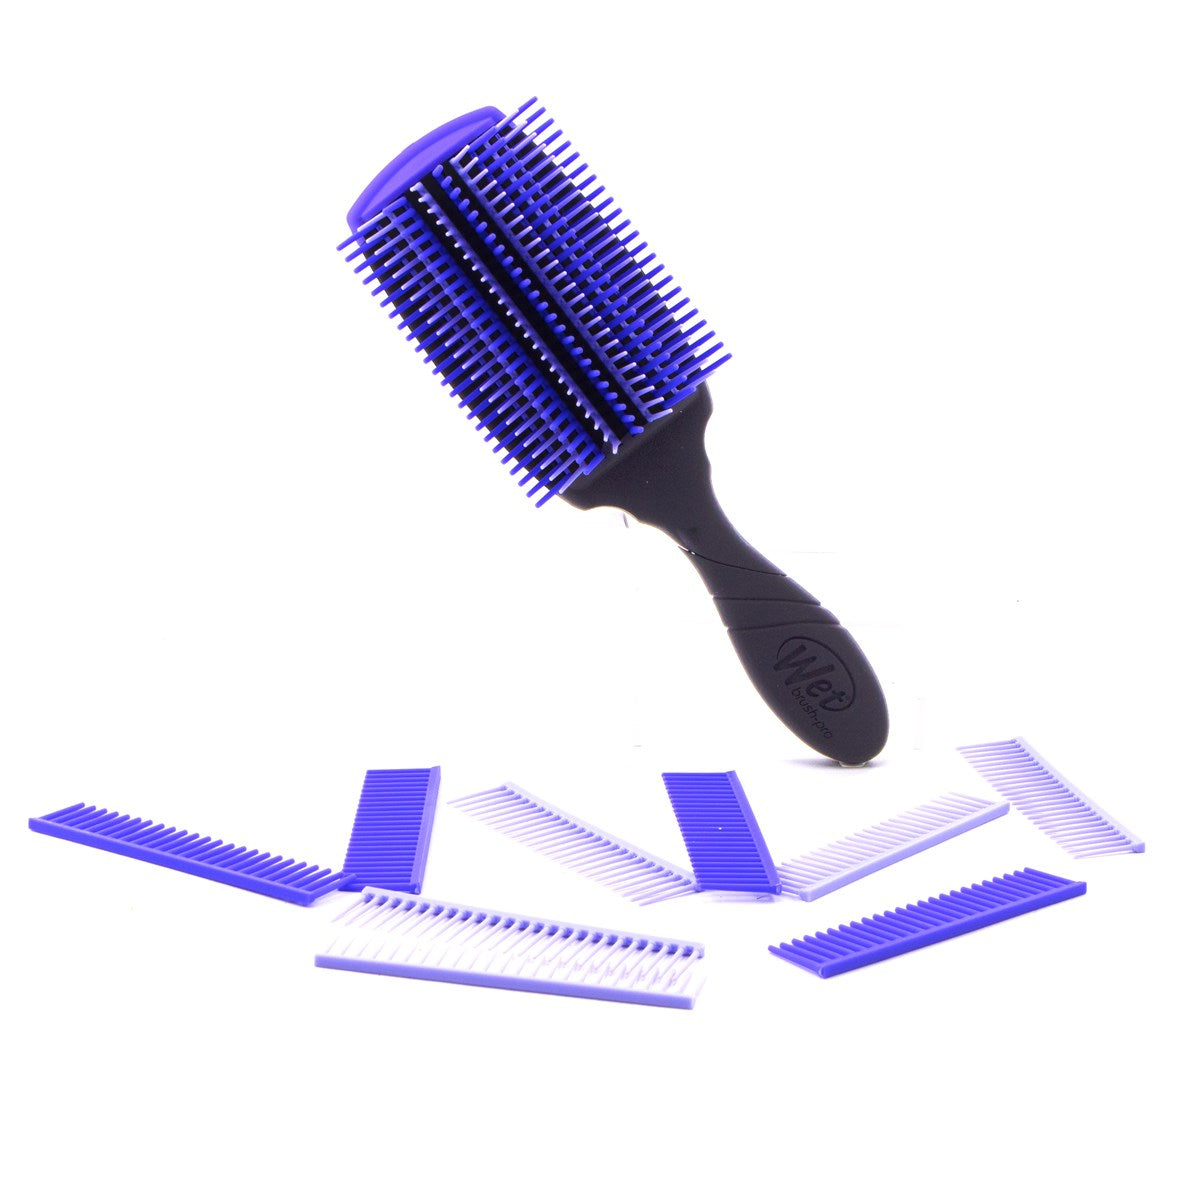 Wet Brush Customizable Curl Detangler